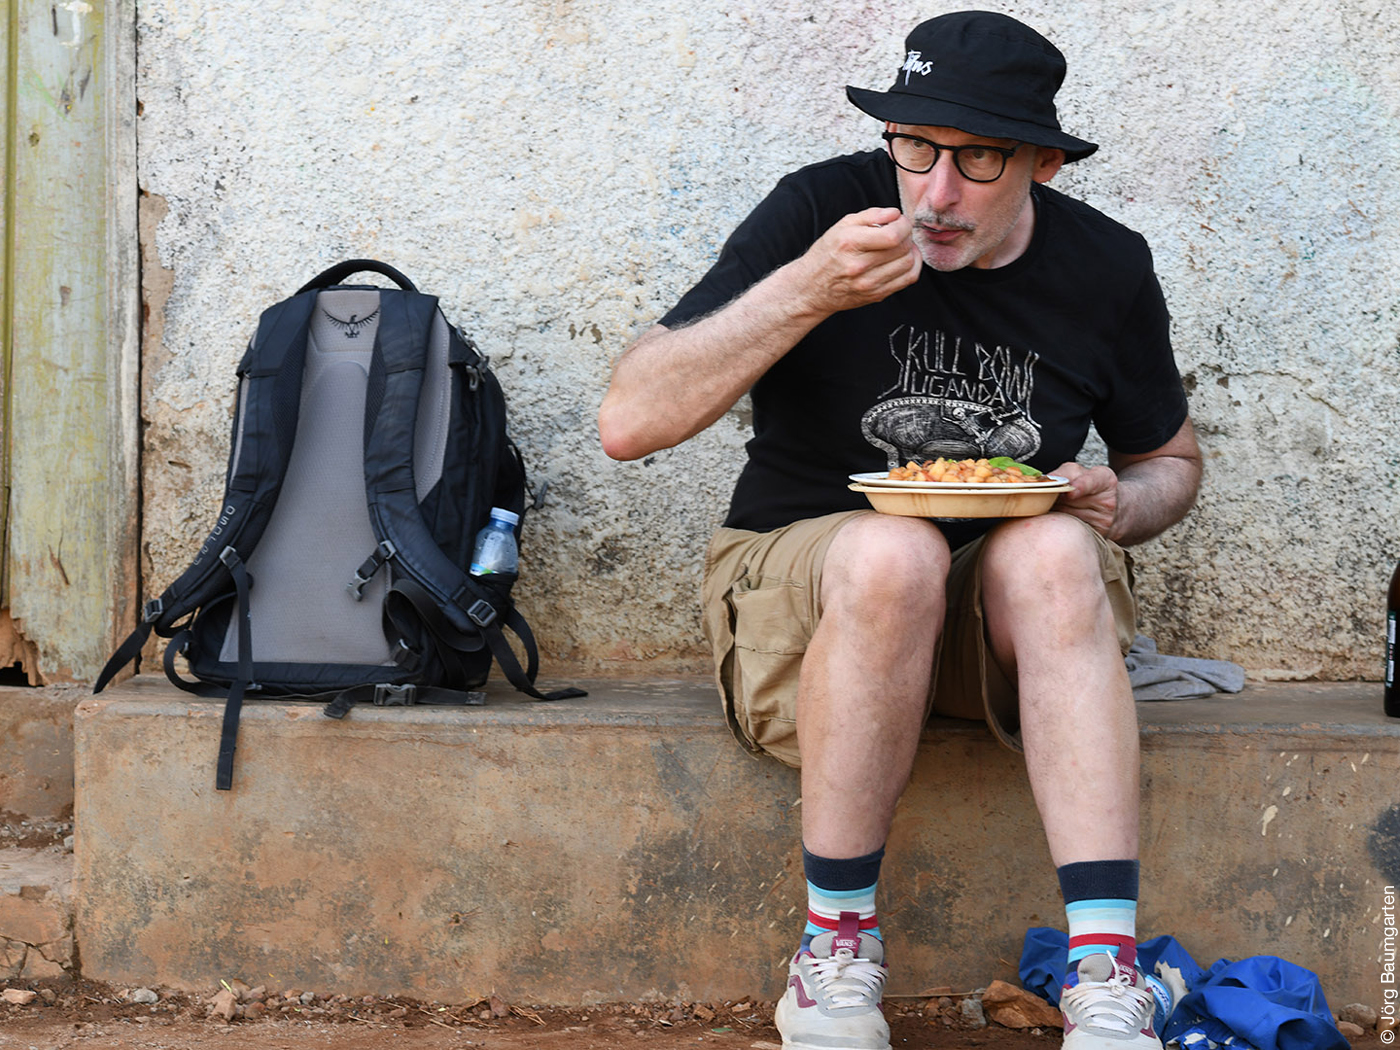 Das Foto zeigt Ralf Maier, der auf einem Vorsprung vor einer Hauswand sitzt und aus einem Teller isst.